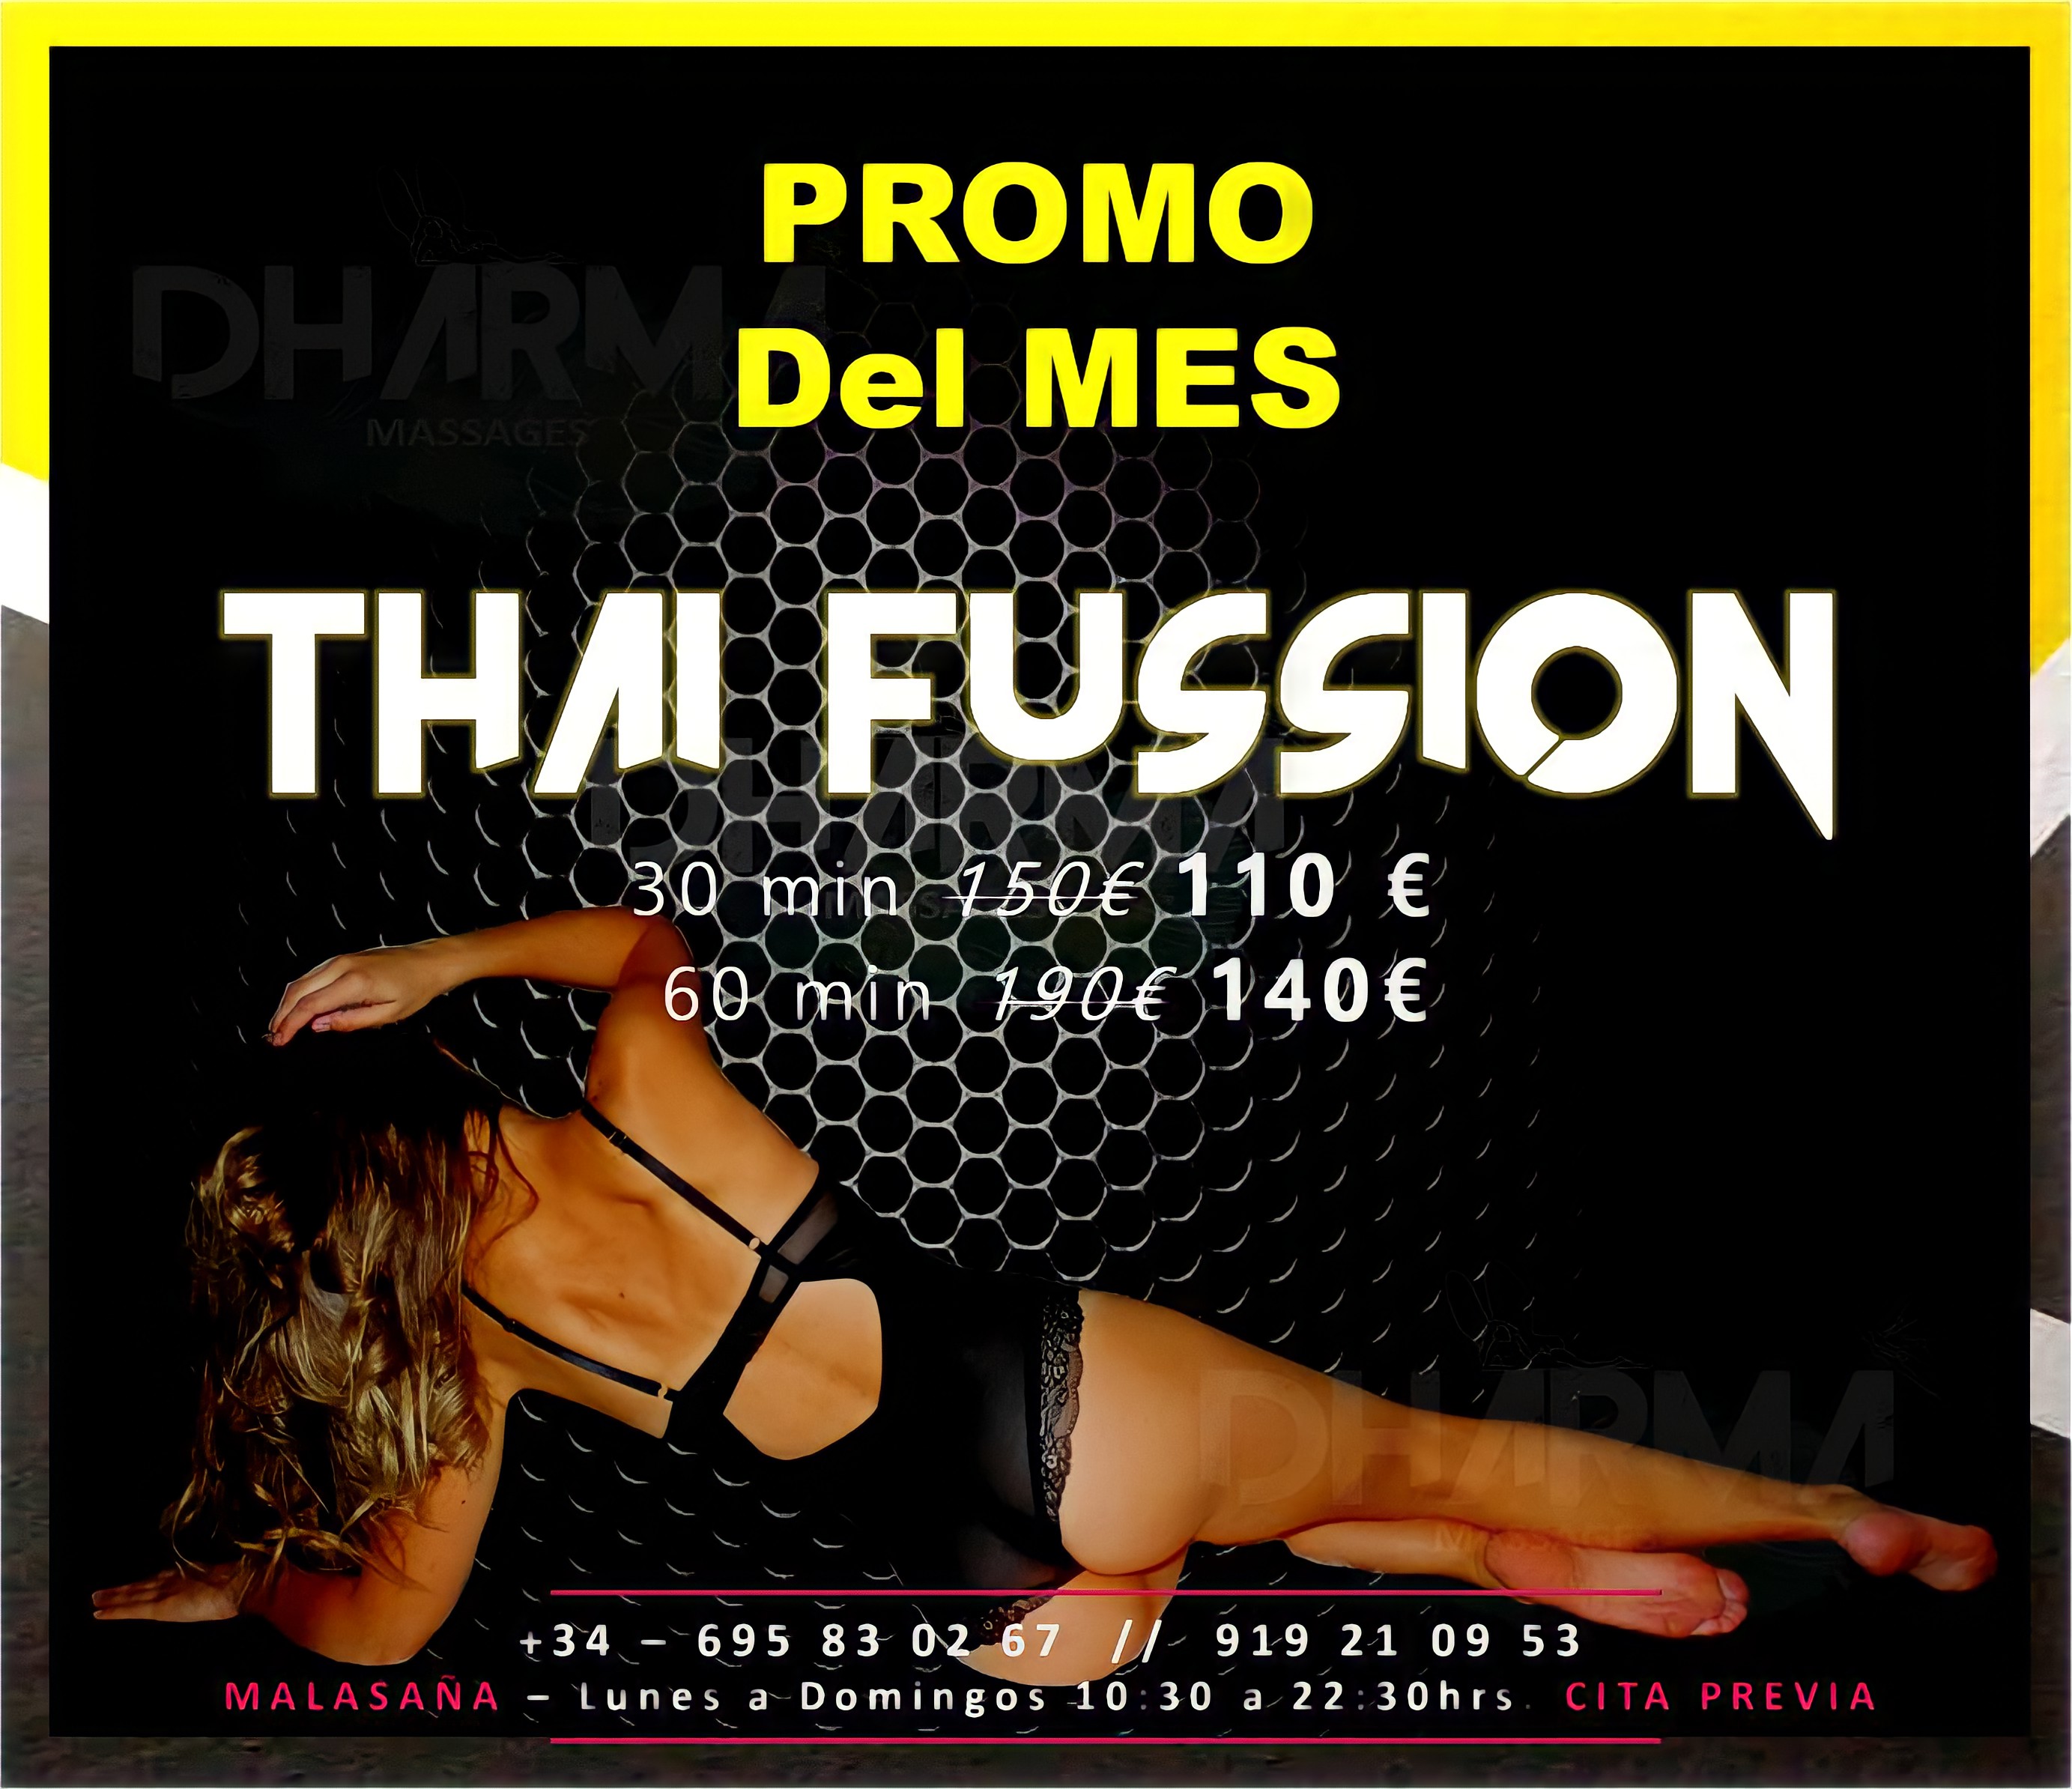 masajistas-eroticos madrid • Promo del mes • MASAJES EROTICOS EN MADRID